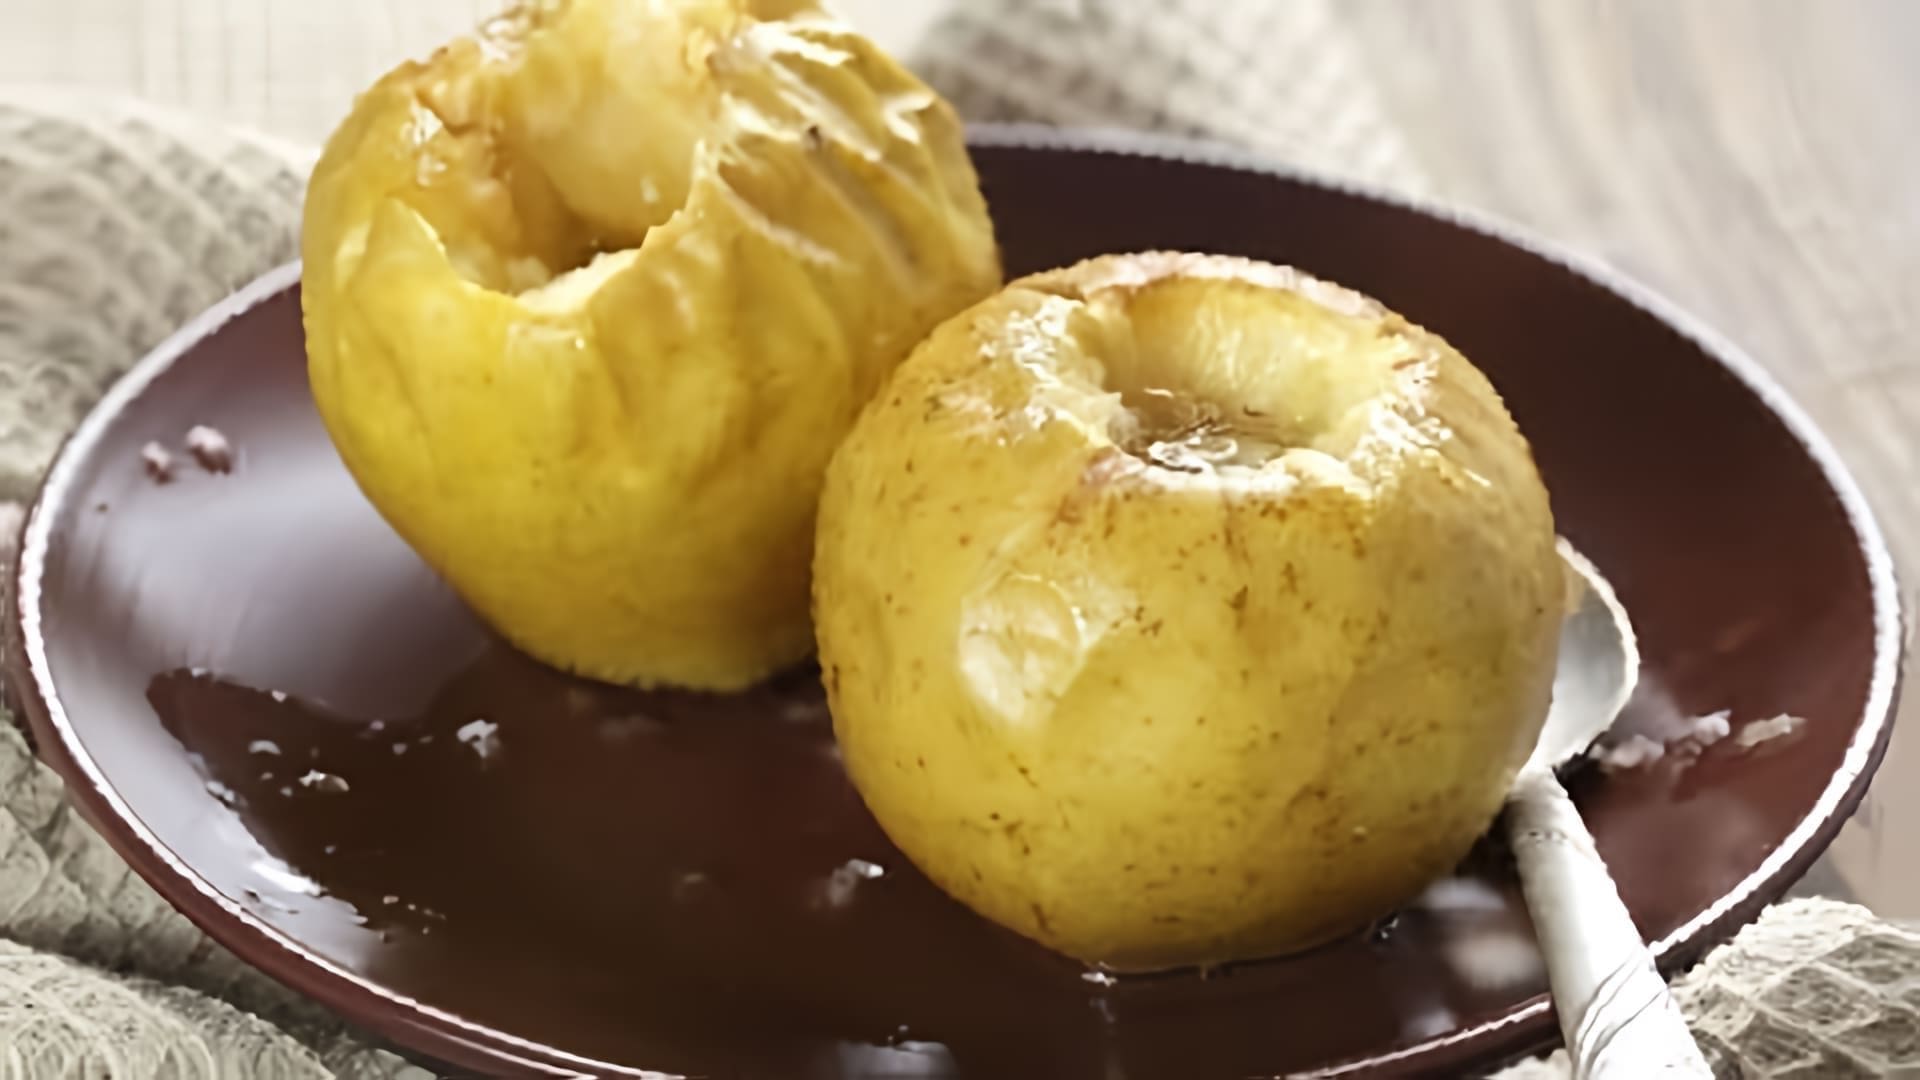 В этом видео демонстрируется рецепт приготовления печеных яблок